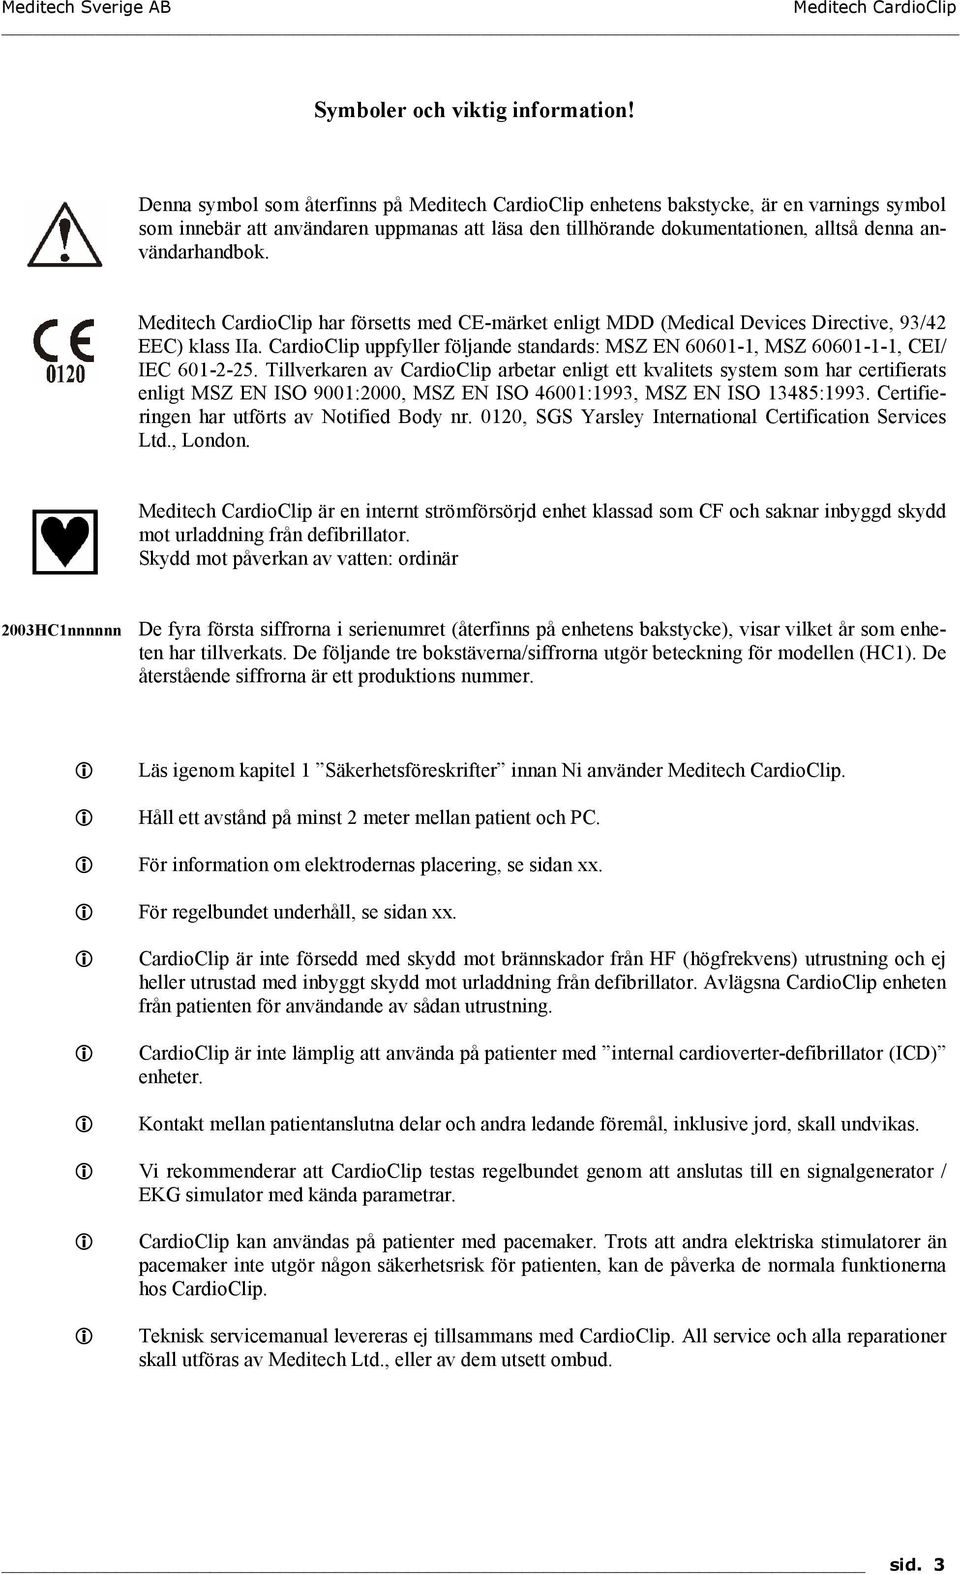 Meditech CardioClip har försetts med CE-märket enligt MDD (Medical Devices Directive, 93/42 EEC) klass IIa. CardioClip uppfyller följande standards: MSZ EN 60601-1, MSZ 60601-1-1, CEI/ IEC 601-2-25.